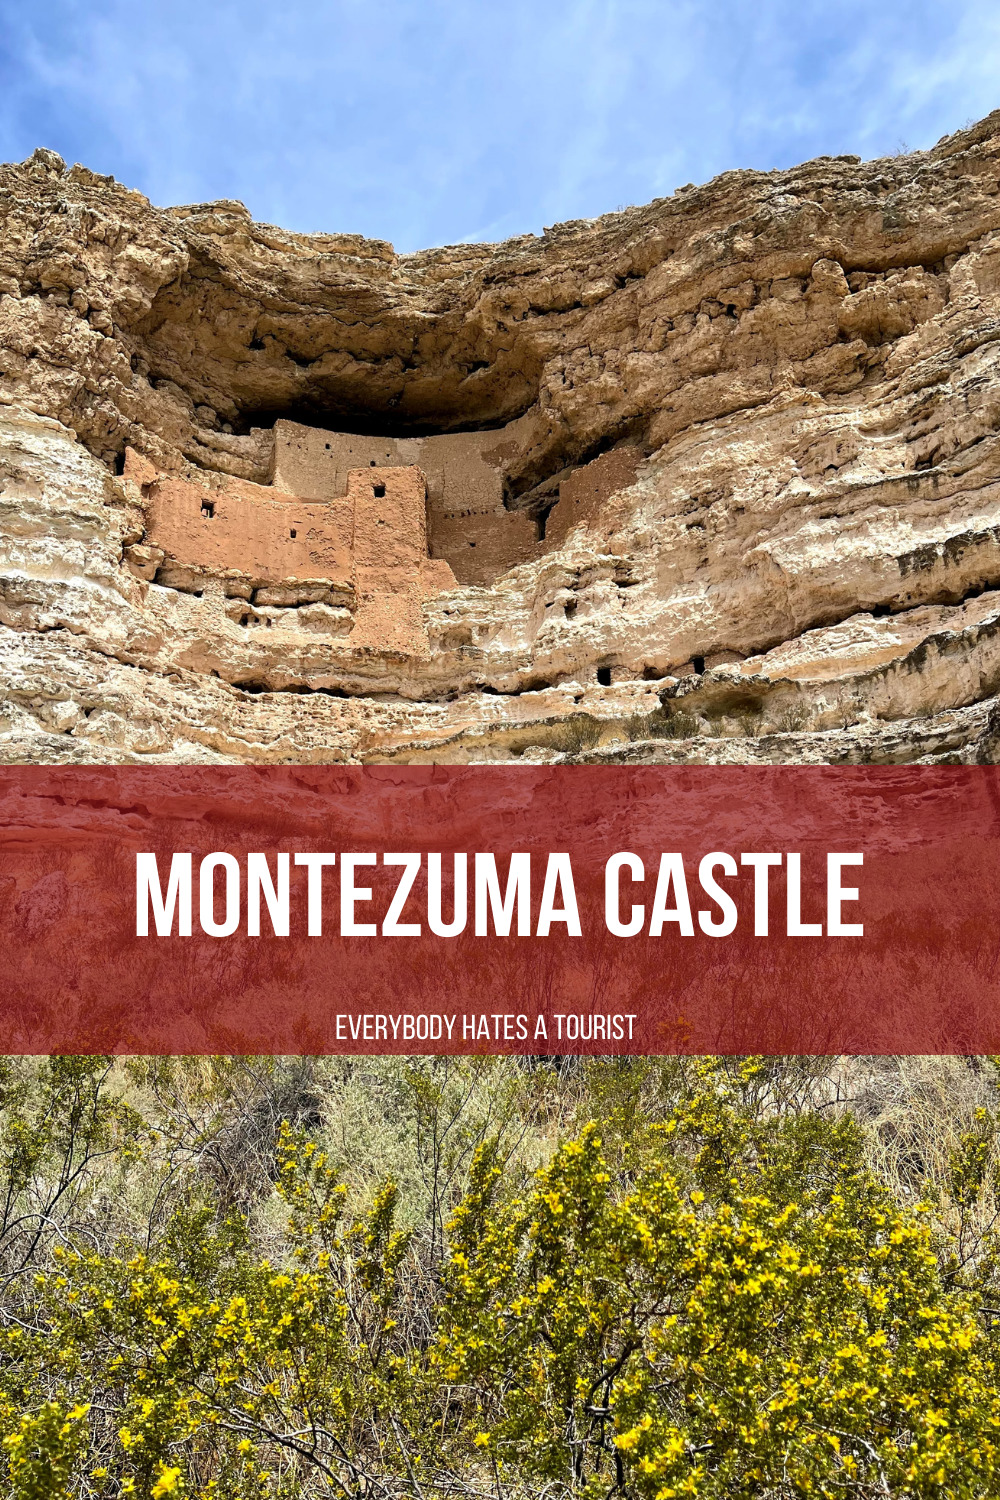 montezuma castle in arizona - Montezuma Castle